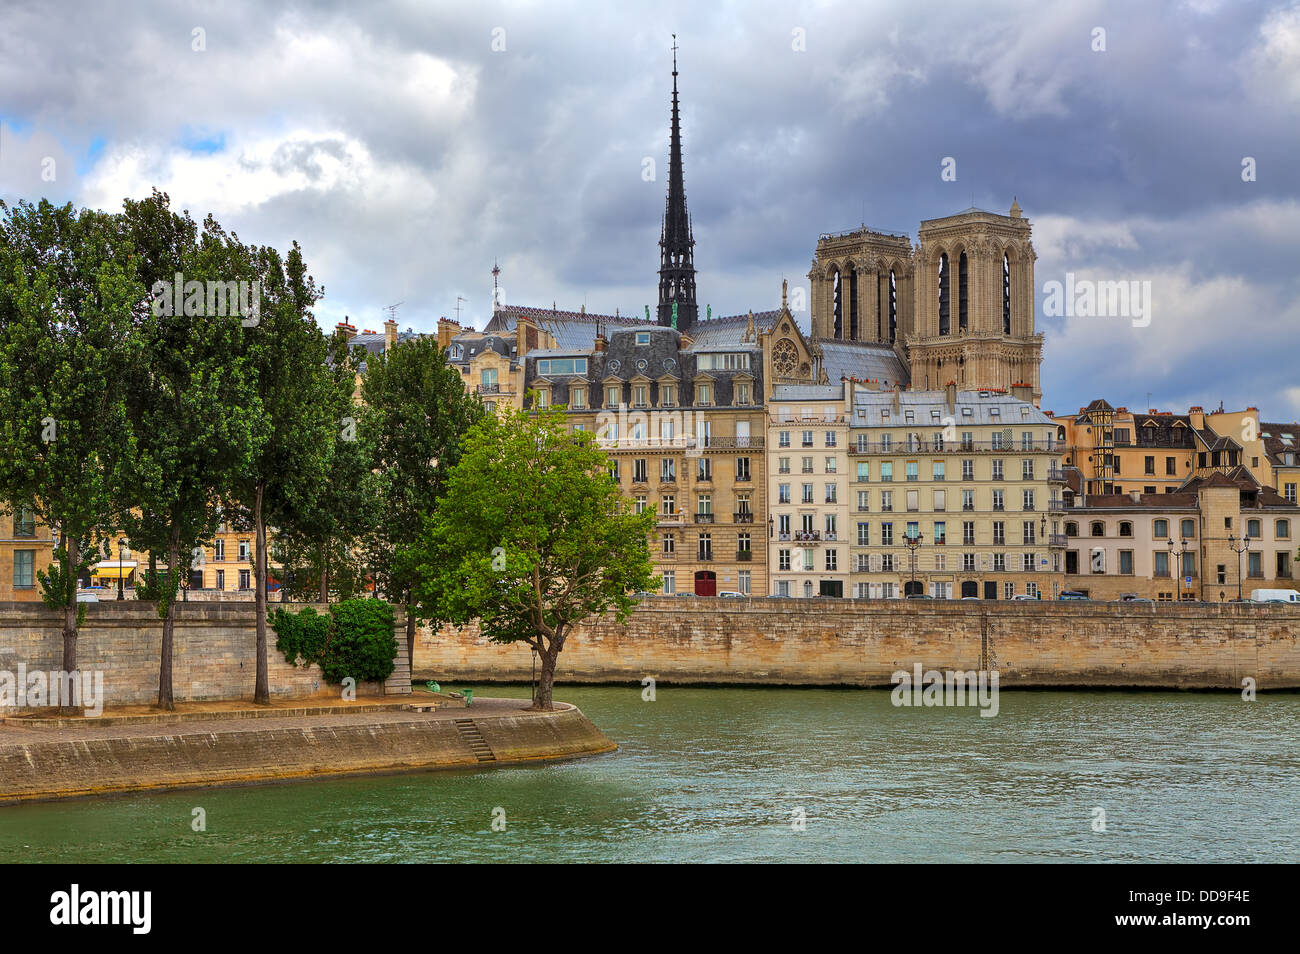 Notre Dame de Paris cathedral among typical parisian buildings along Seine river in Paris, France. Stock Photo